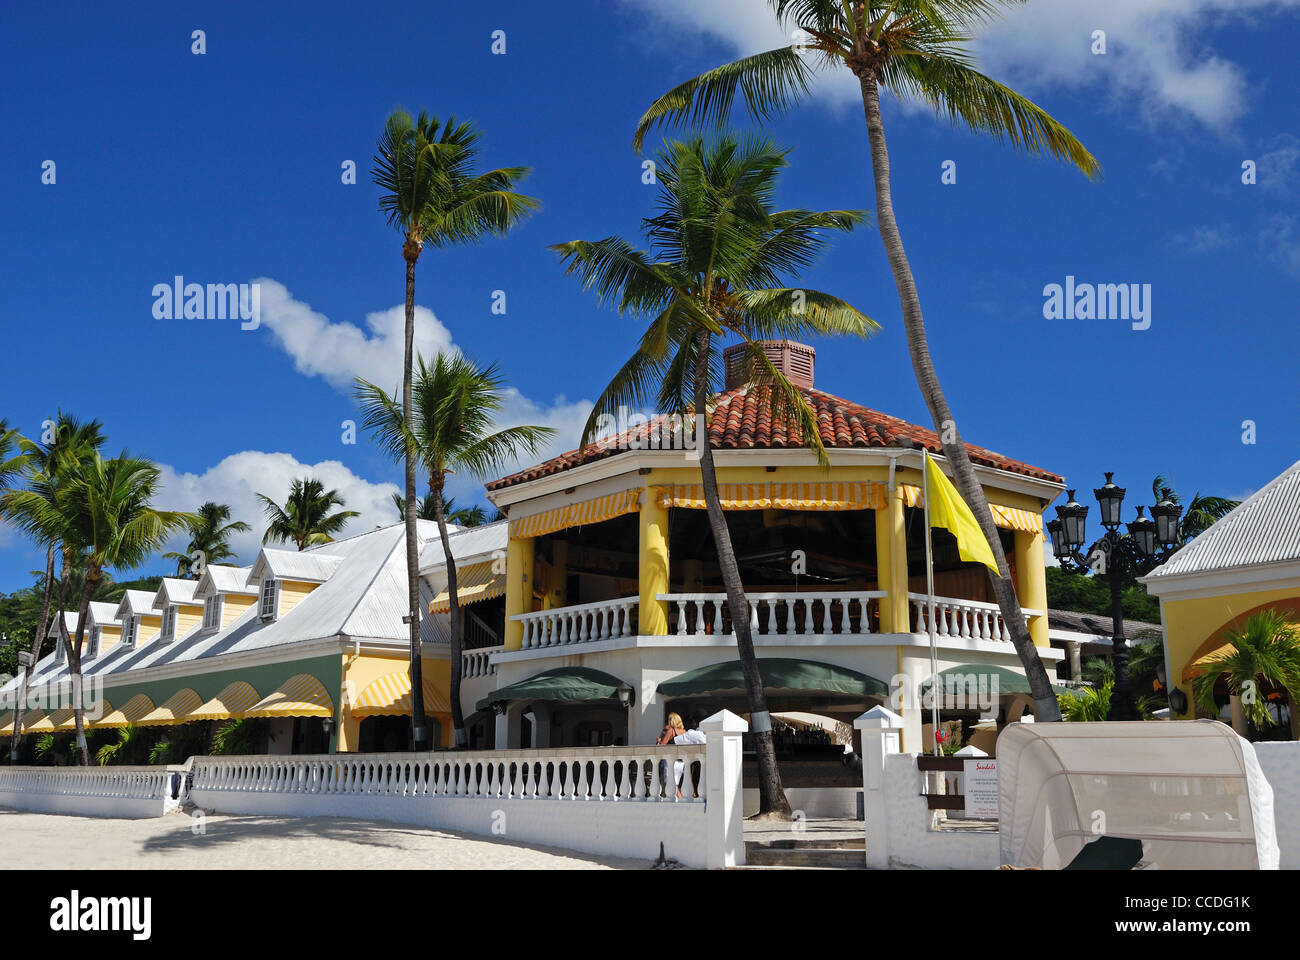 Restaurante/Cafetería En Sandals resort de vacaciones, St. Johns, Antigua, Islas de Sotavento, Caribe, West Indies. Foto de stock